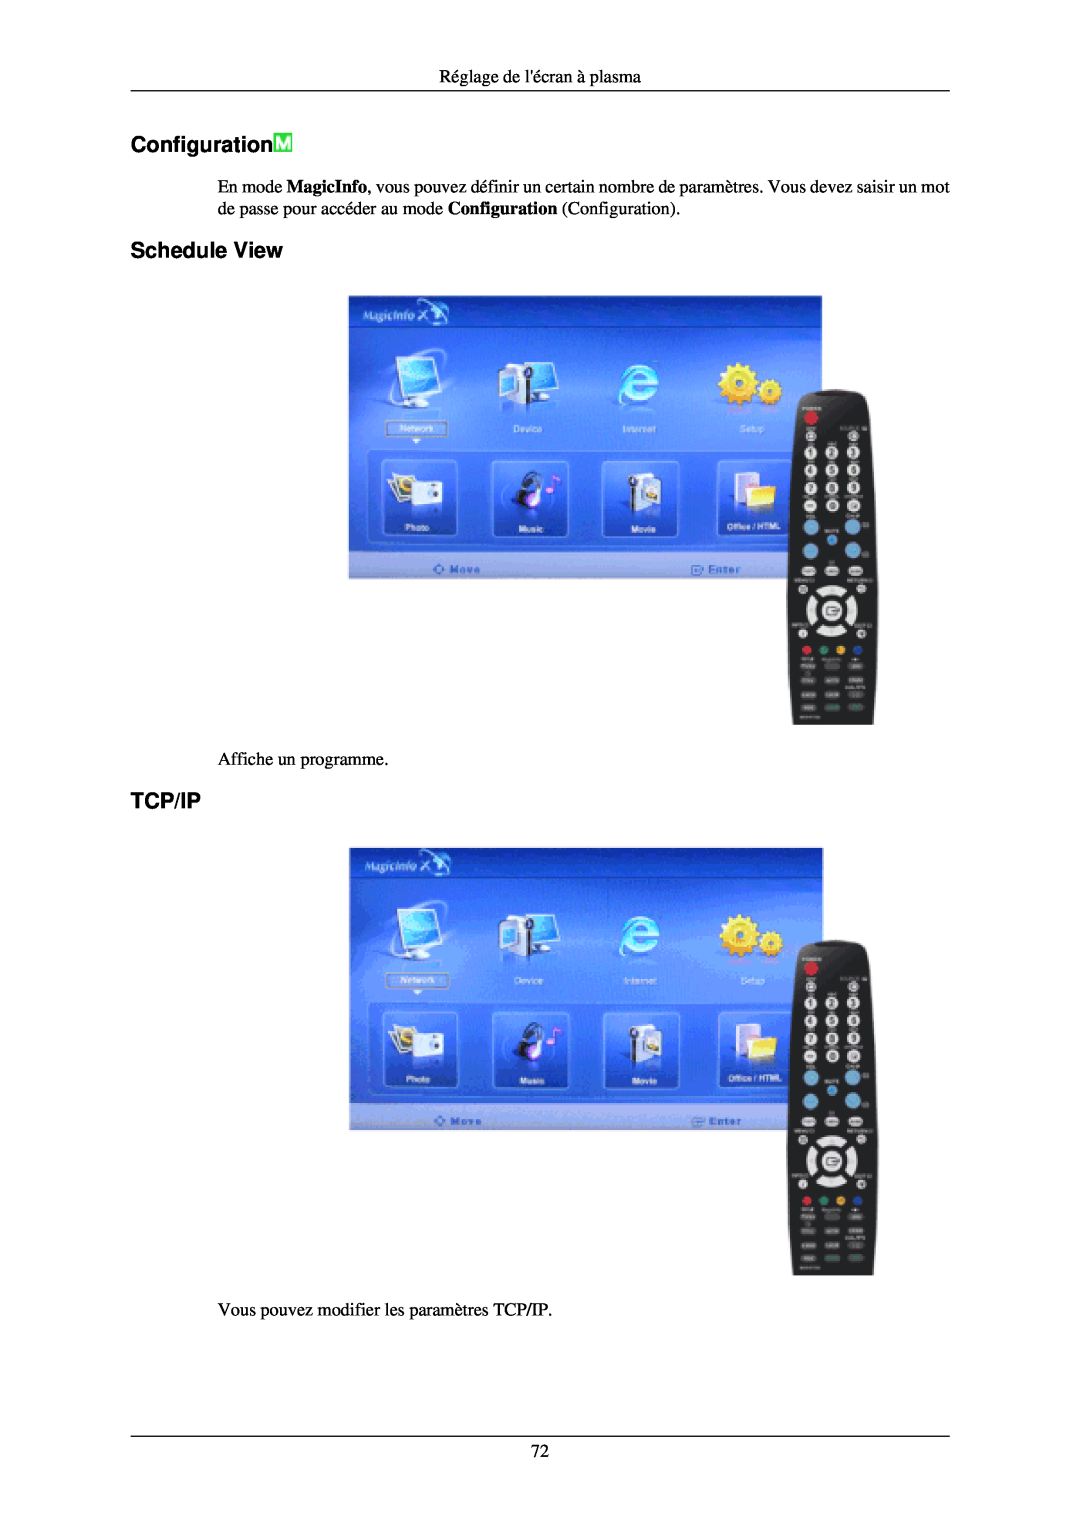 Samsung PH42KLTLBC/EN manual Schedule View, Tcp/Ip, Configuration, Réglage de lécran à plasma, Affiche un programme 